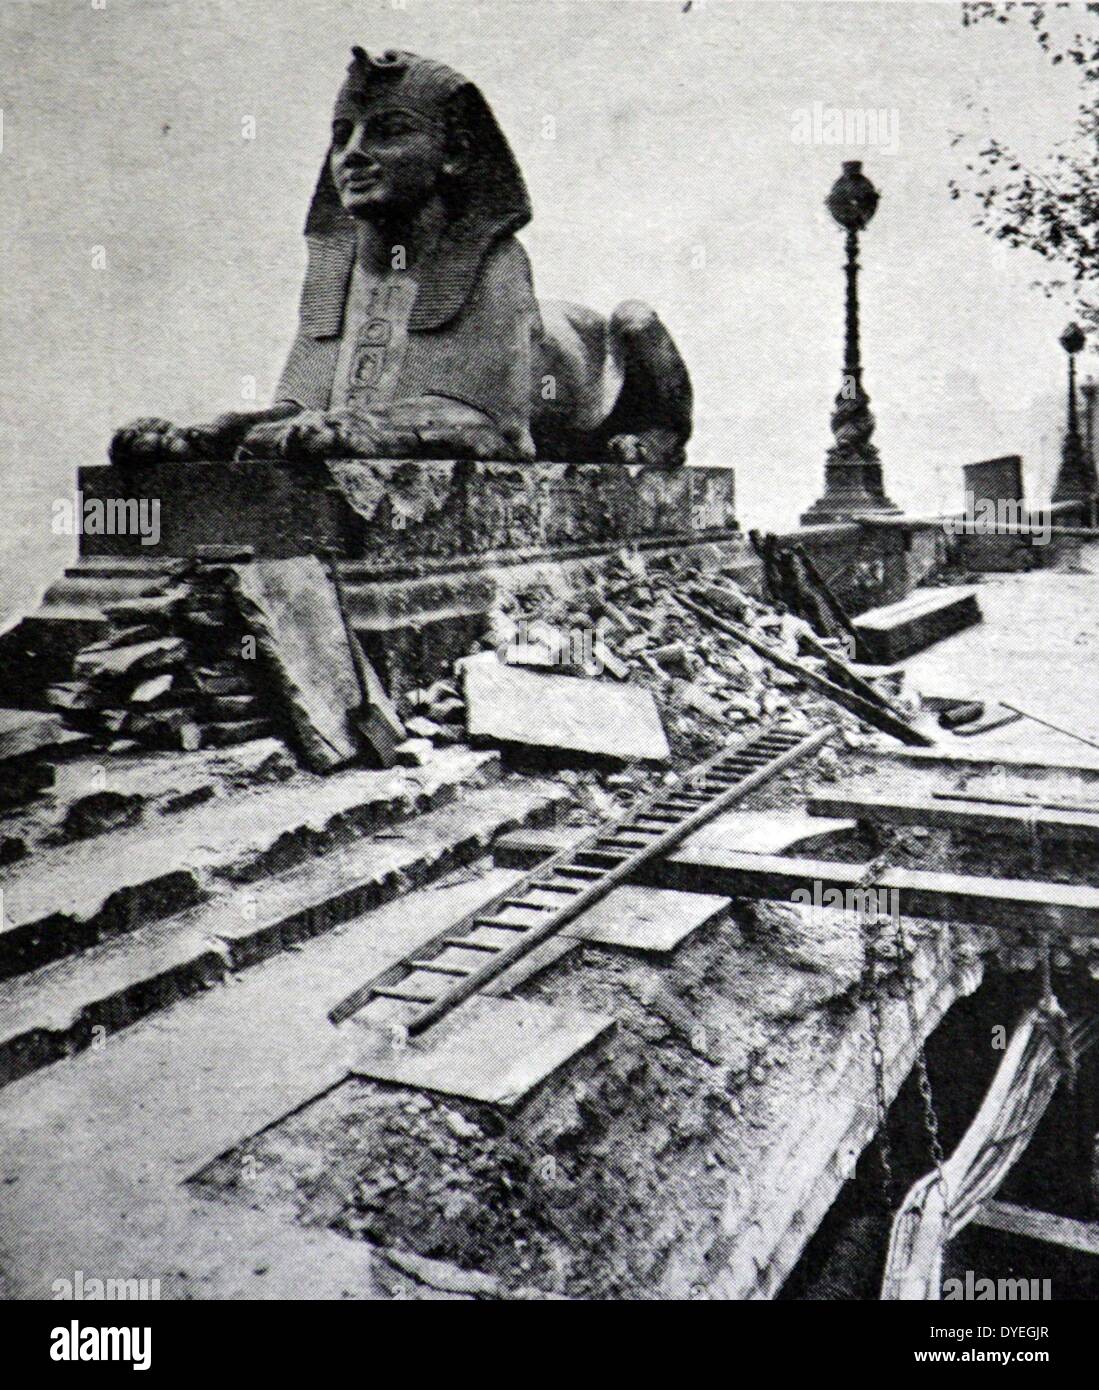 Guerra Mondiale 1 - Bomba di danni sul terrapieno in centro a Londra. Foro nella pavimentazione causata da uno dei cinquanta-tre bombe lanciate durante il raid su la sera del 18 dicembre 1917. Foto Stock